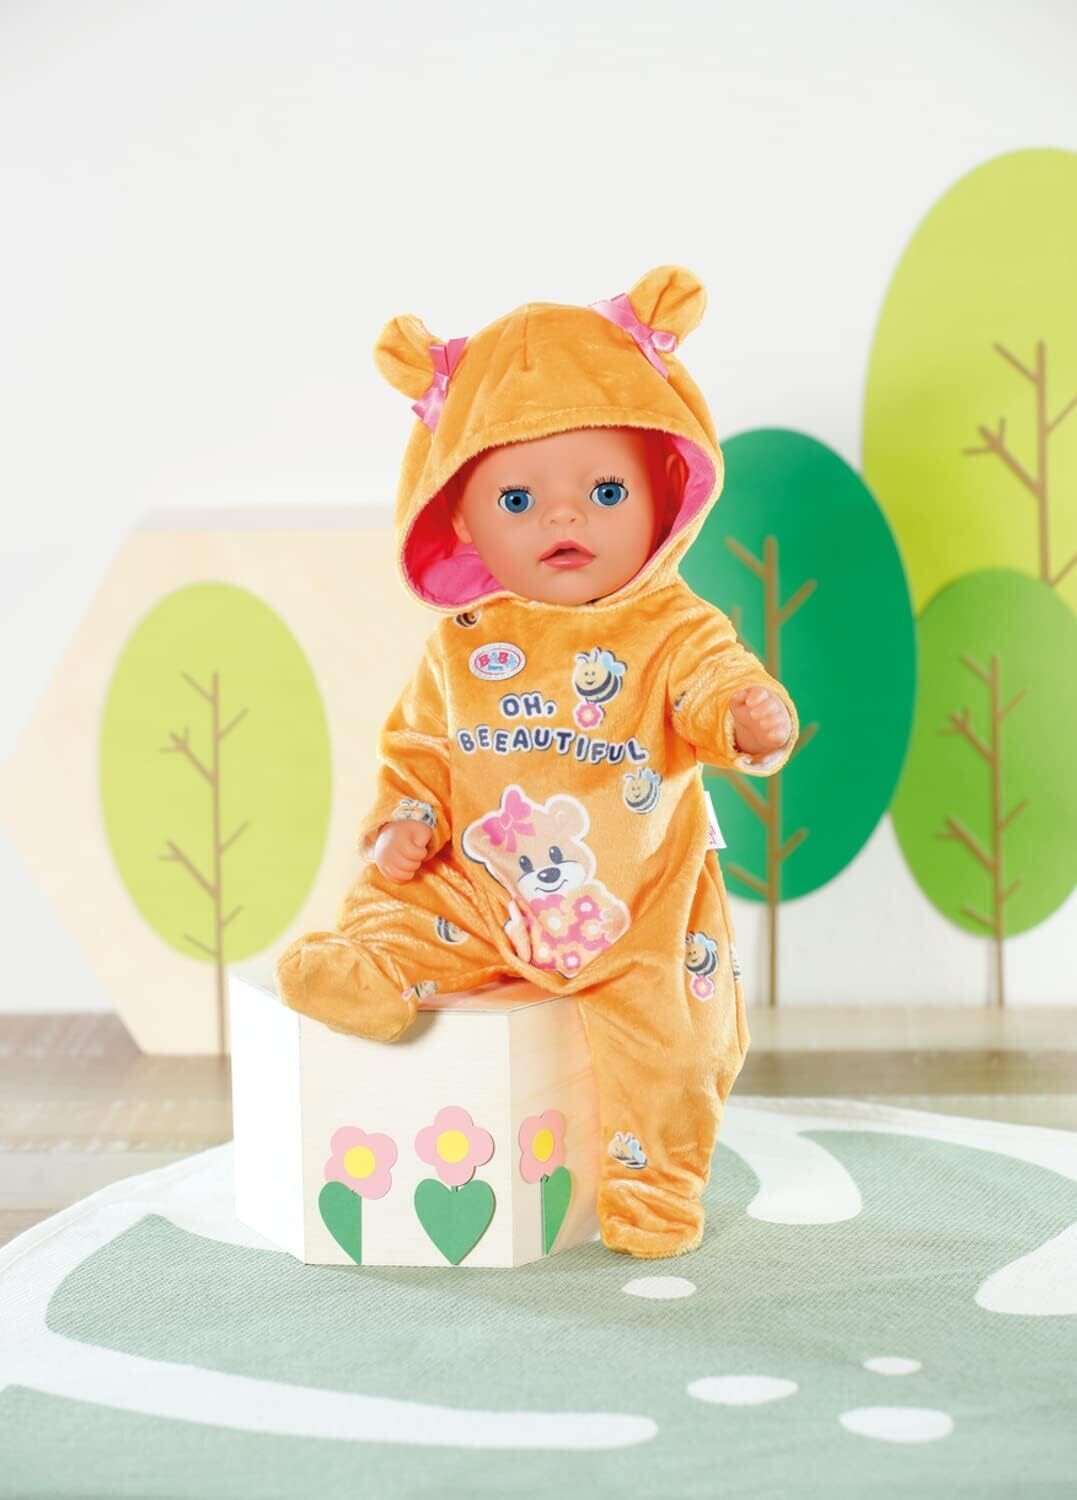 BABY born Little Grenouillère combi pyjama pour poupées qui mesurent jusqu’à 36cm - Matière très douce avec 1 capuche & 1 cintre - Convient aux enfants dès 2 ans+